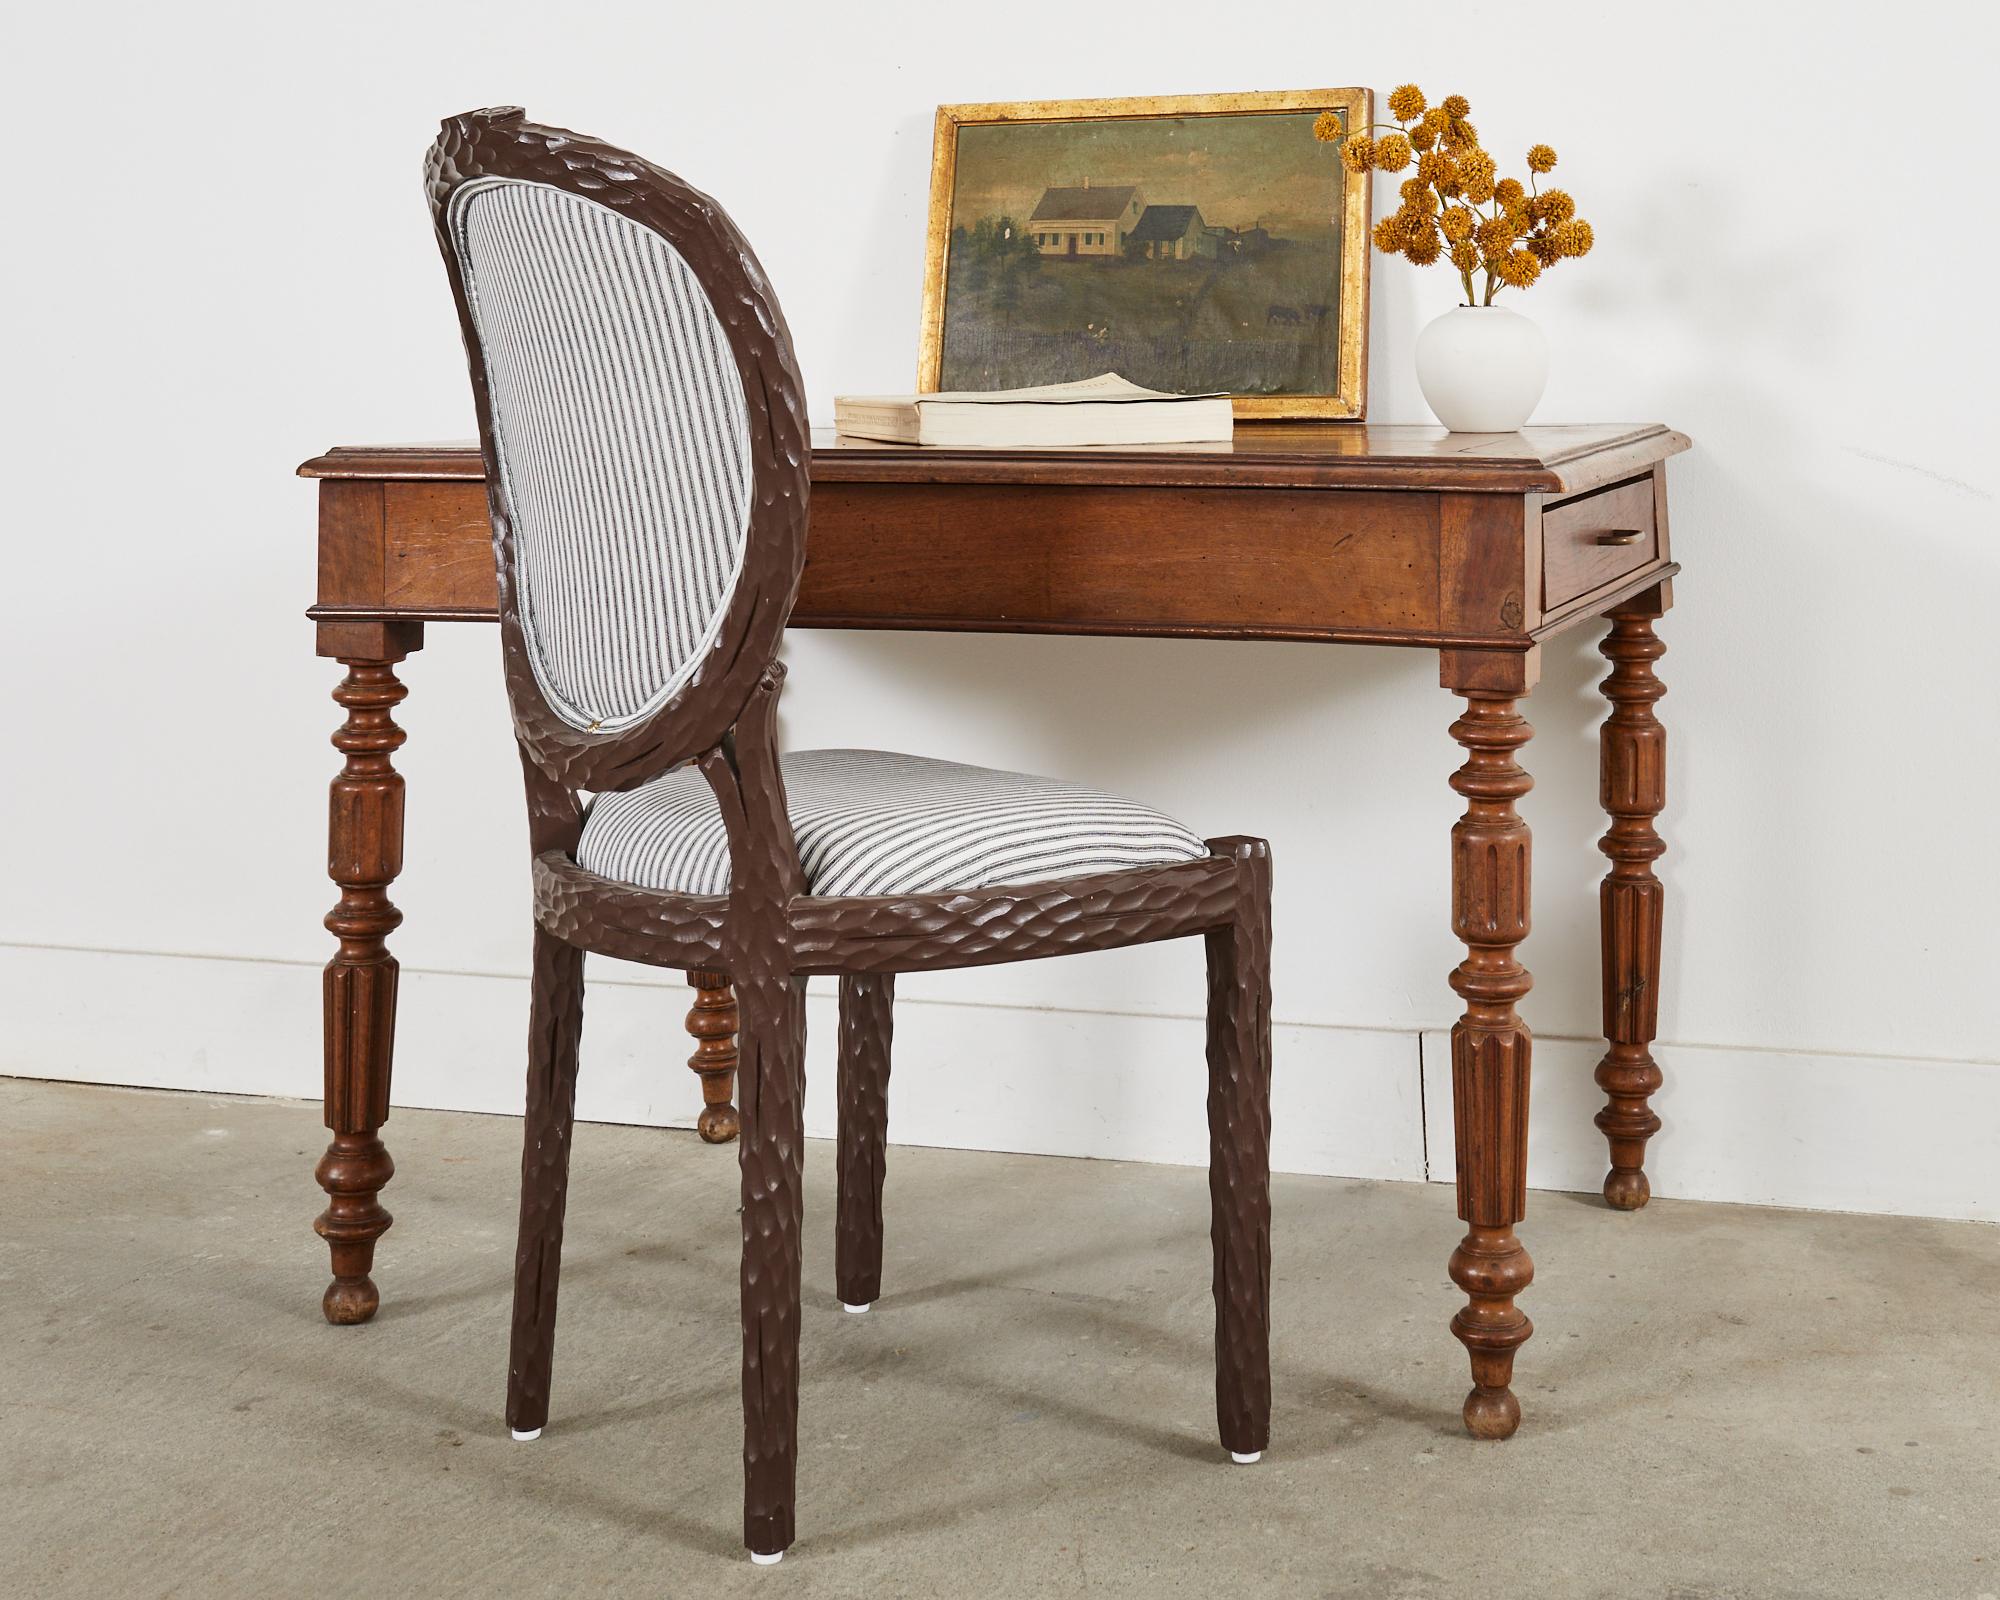 Bellissimo tavolo o scrivania inglese William IV del XIX secolo, realizzato in legno misto di quercia e frutta. Il tavolo è dotato di cassetti portaoggetti su ciascuna estremità con tiretti in ottone patinato. La parte superiore presenta un bordo